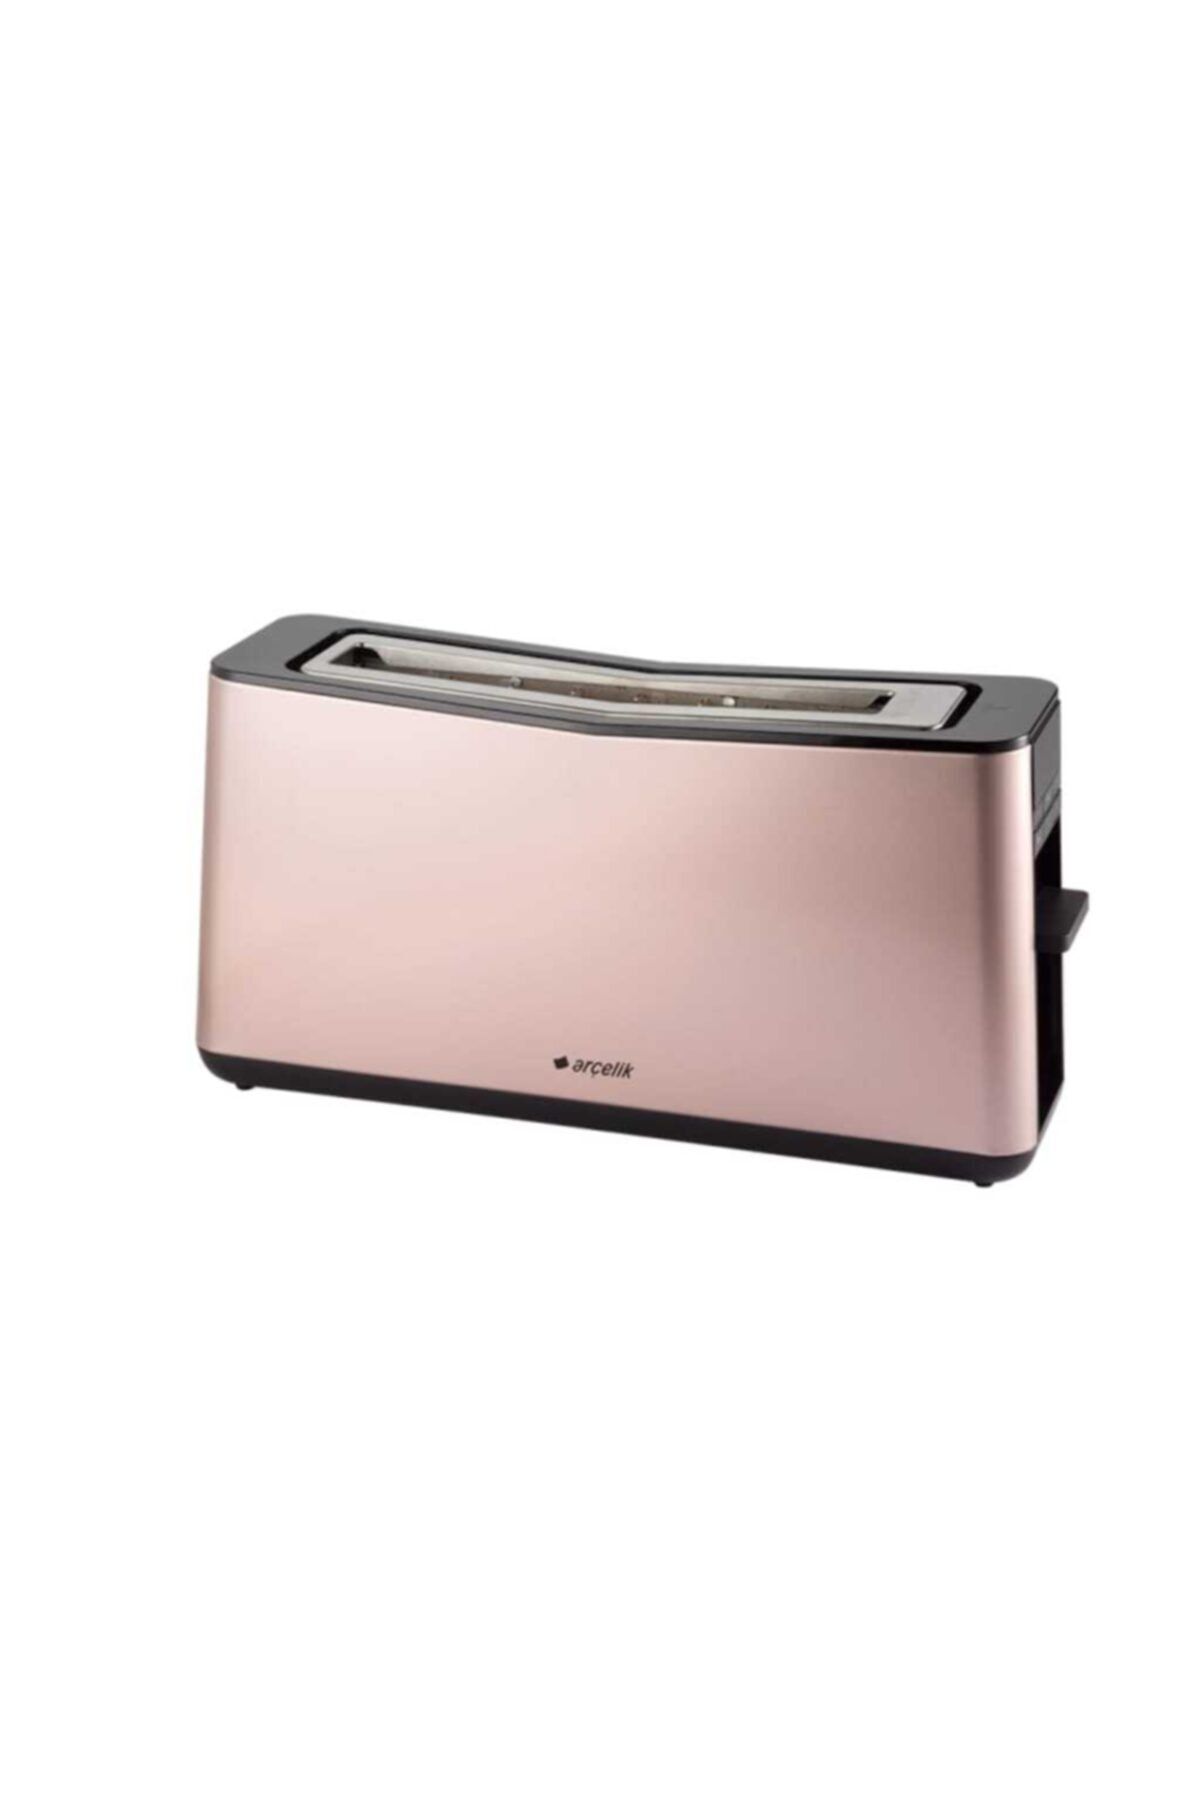 Arçelik K 8550 R Rose Gold Ekmek Kızartma Makinesi